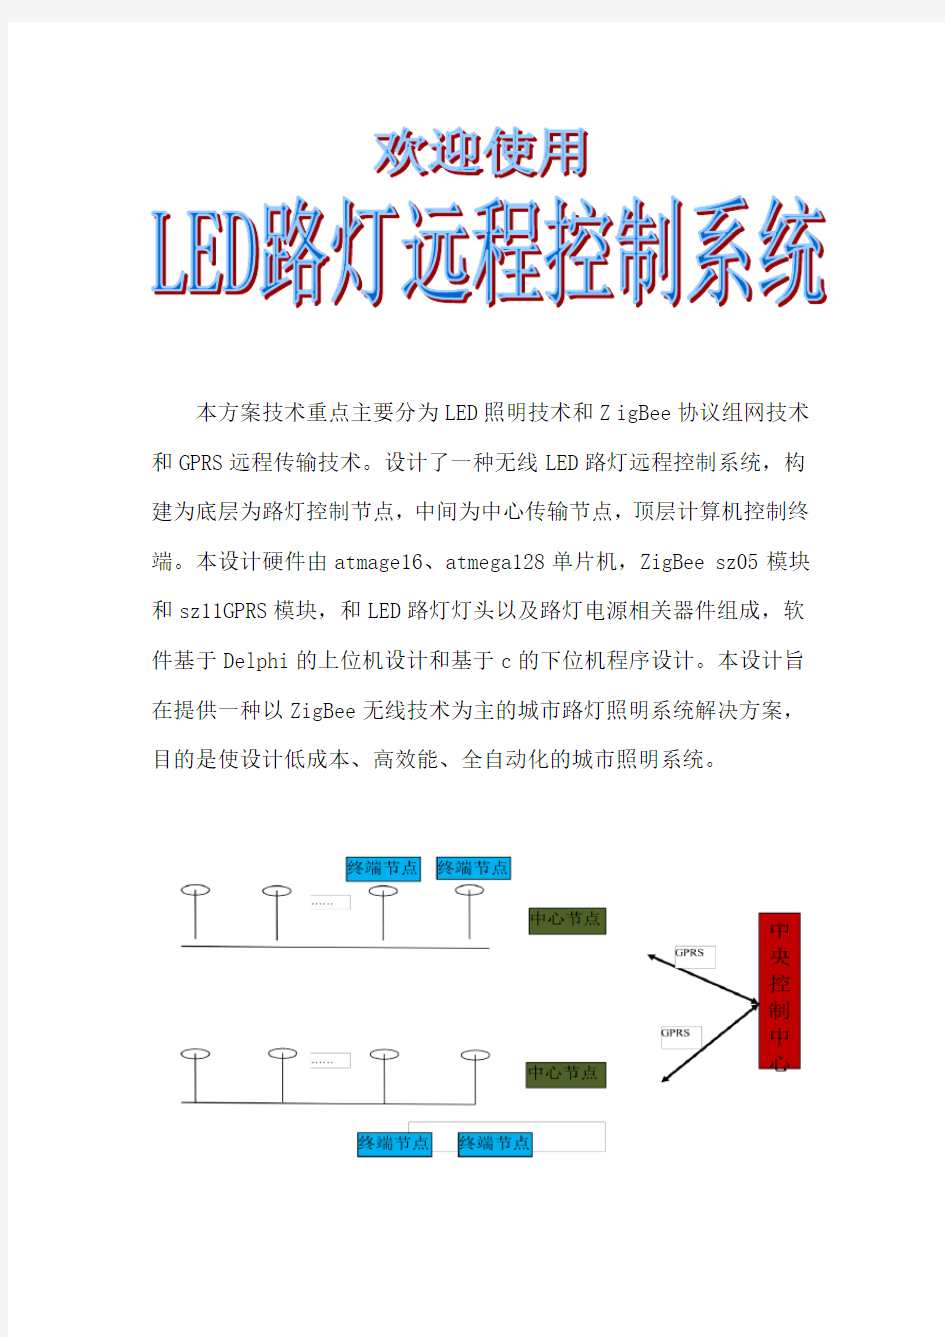 LED路灯远程控制系统使用说明